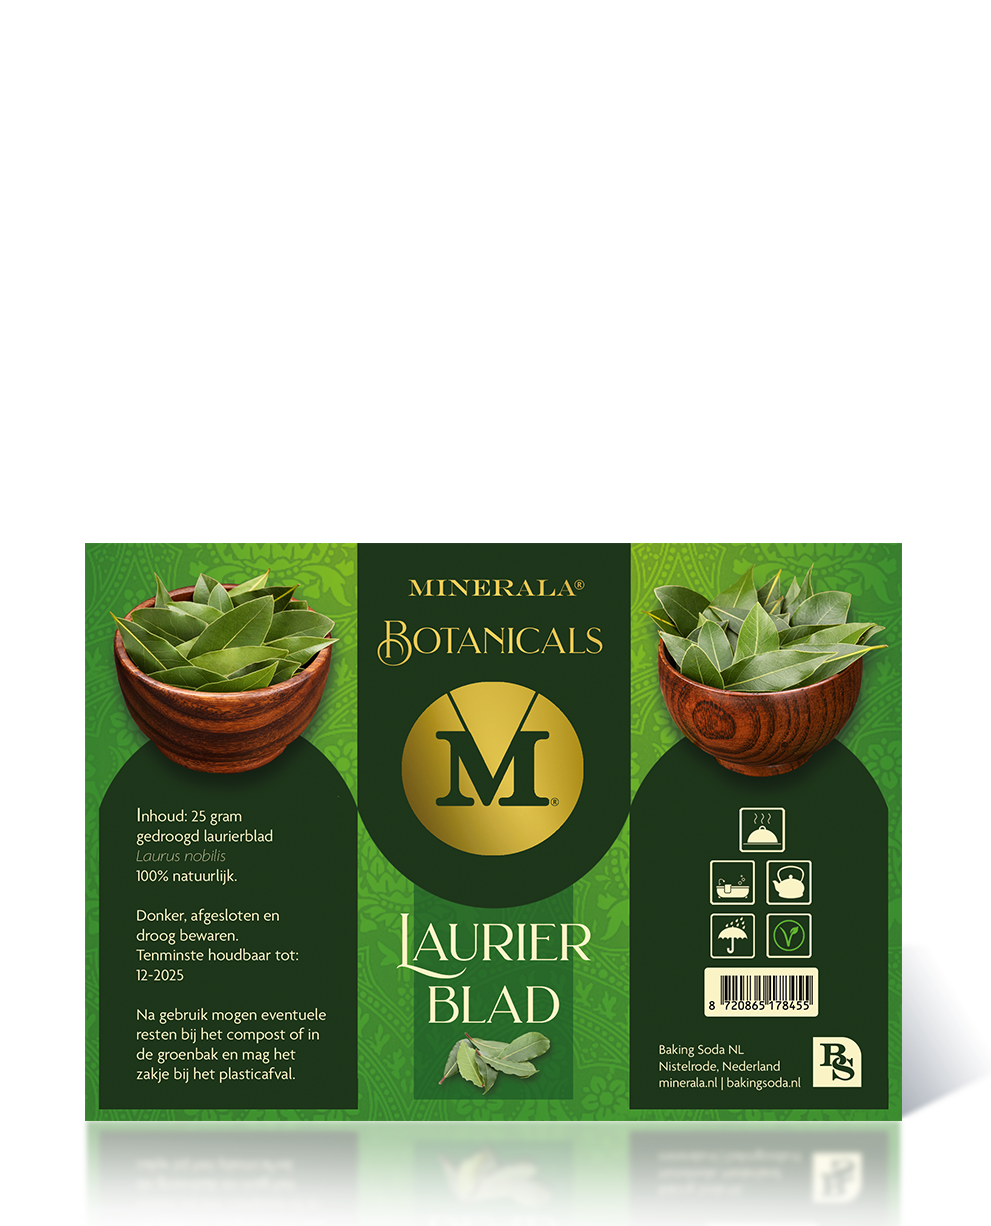 Minerala Botanicals Laurier blad - Bakingsoda NL